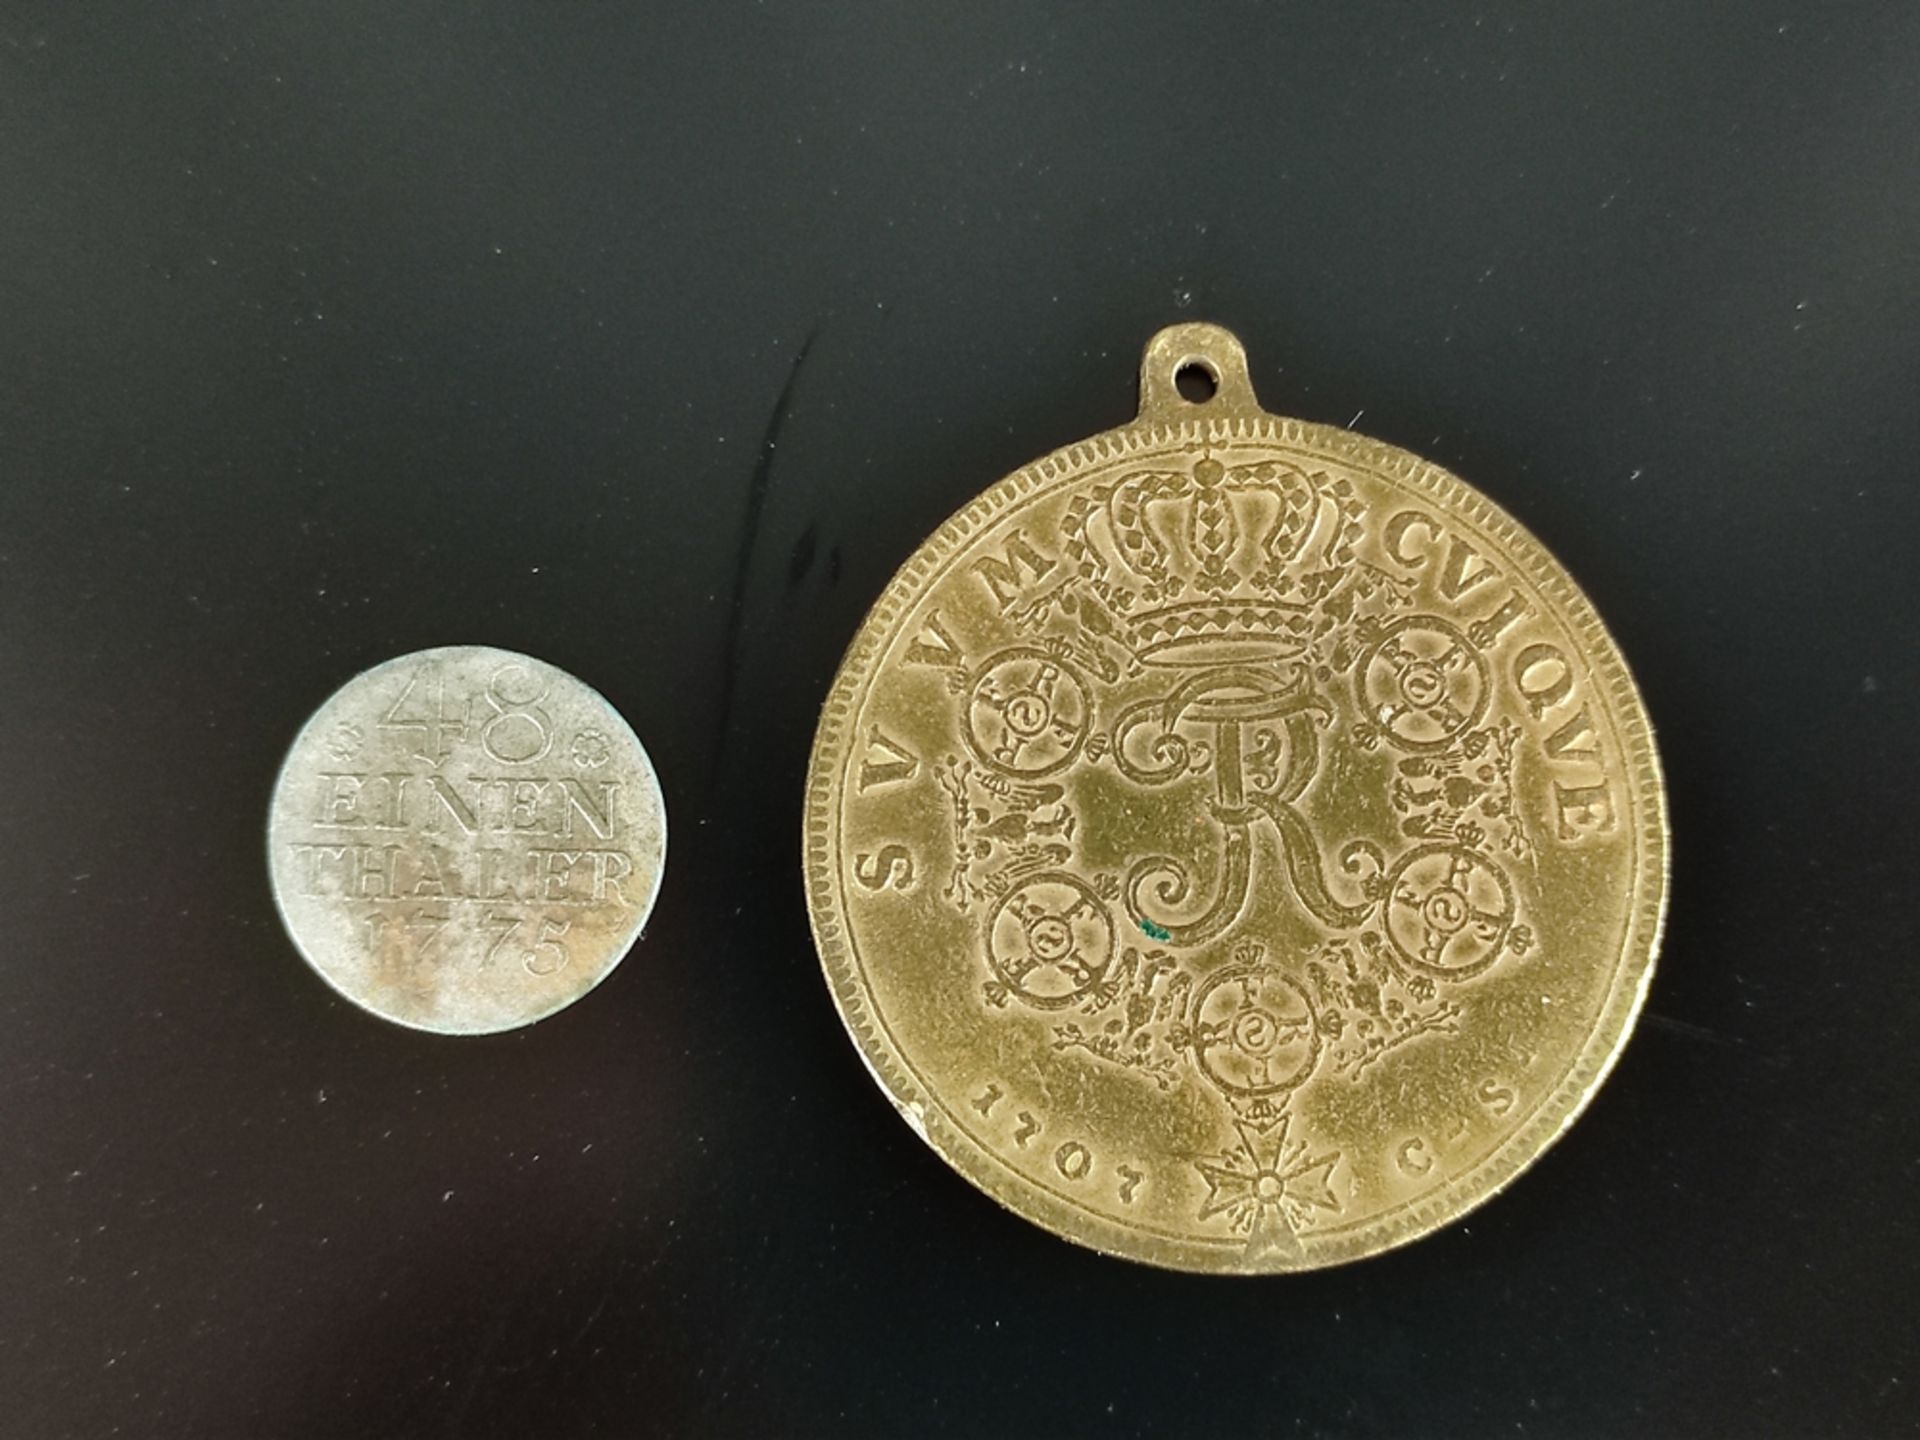 Lot- Medaille und Münze, 1/48 Taler, Königreich Preußen, Sil